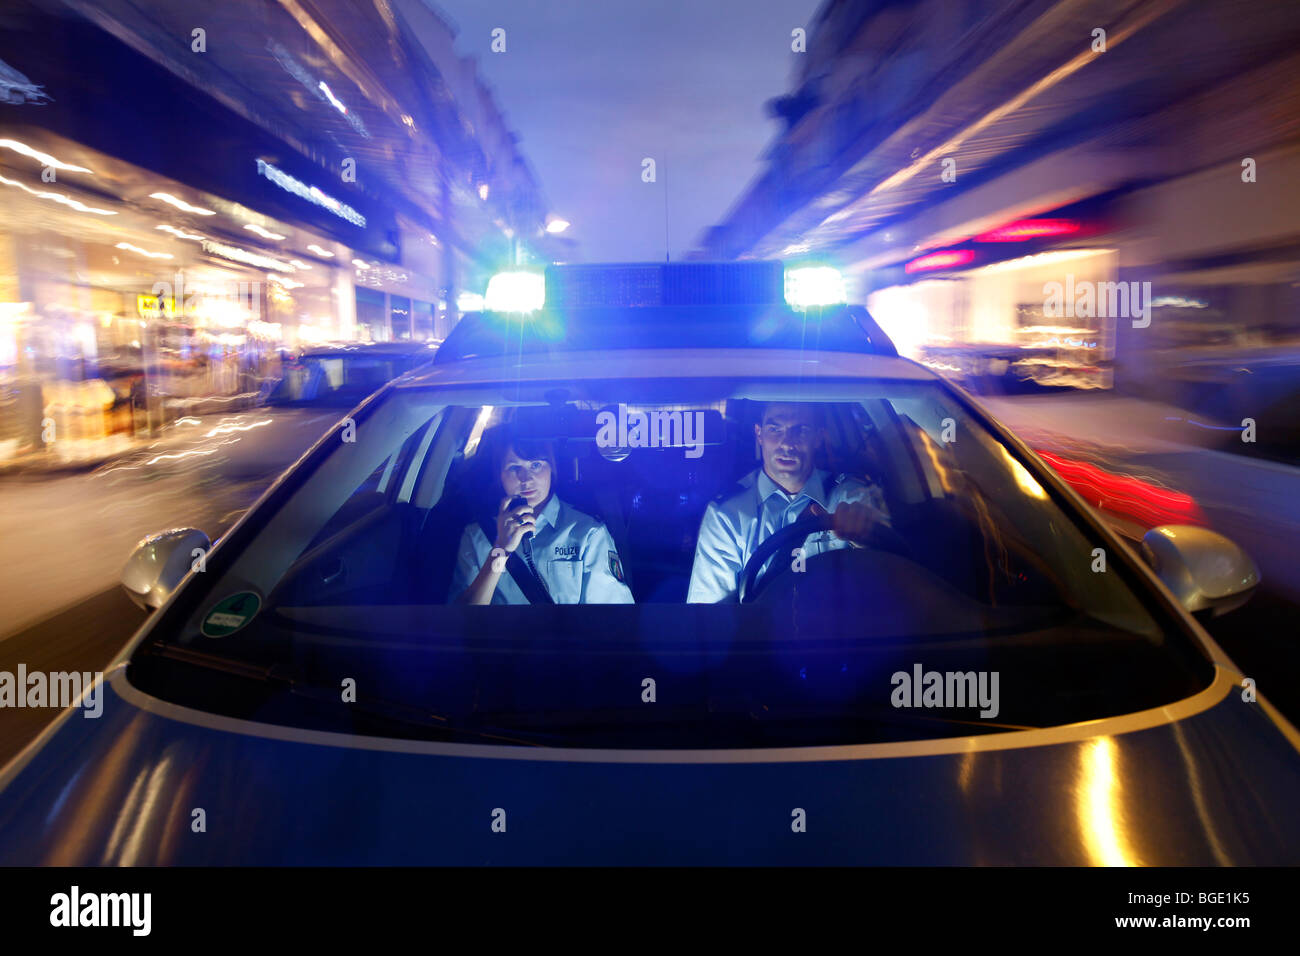 Blaulicht Sirene Eines Italienischen Polizeiauto In Der Großstadt In  Aufruhr Lizenzfreie Fotos, Bilder und Stock Fotografie. Image 50757541.